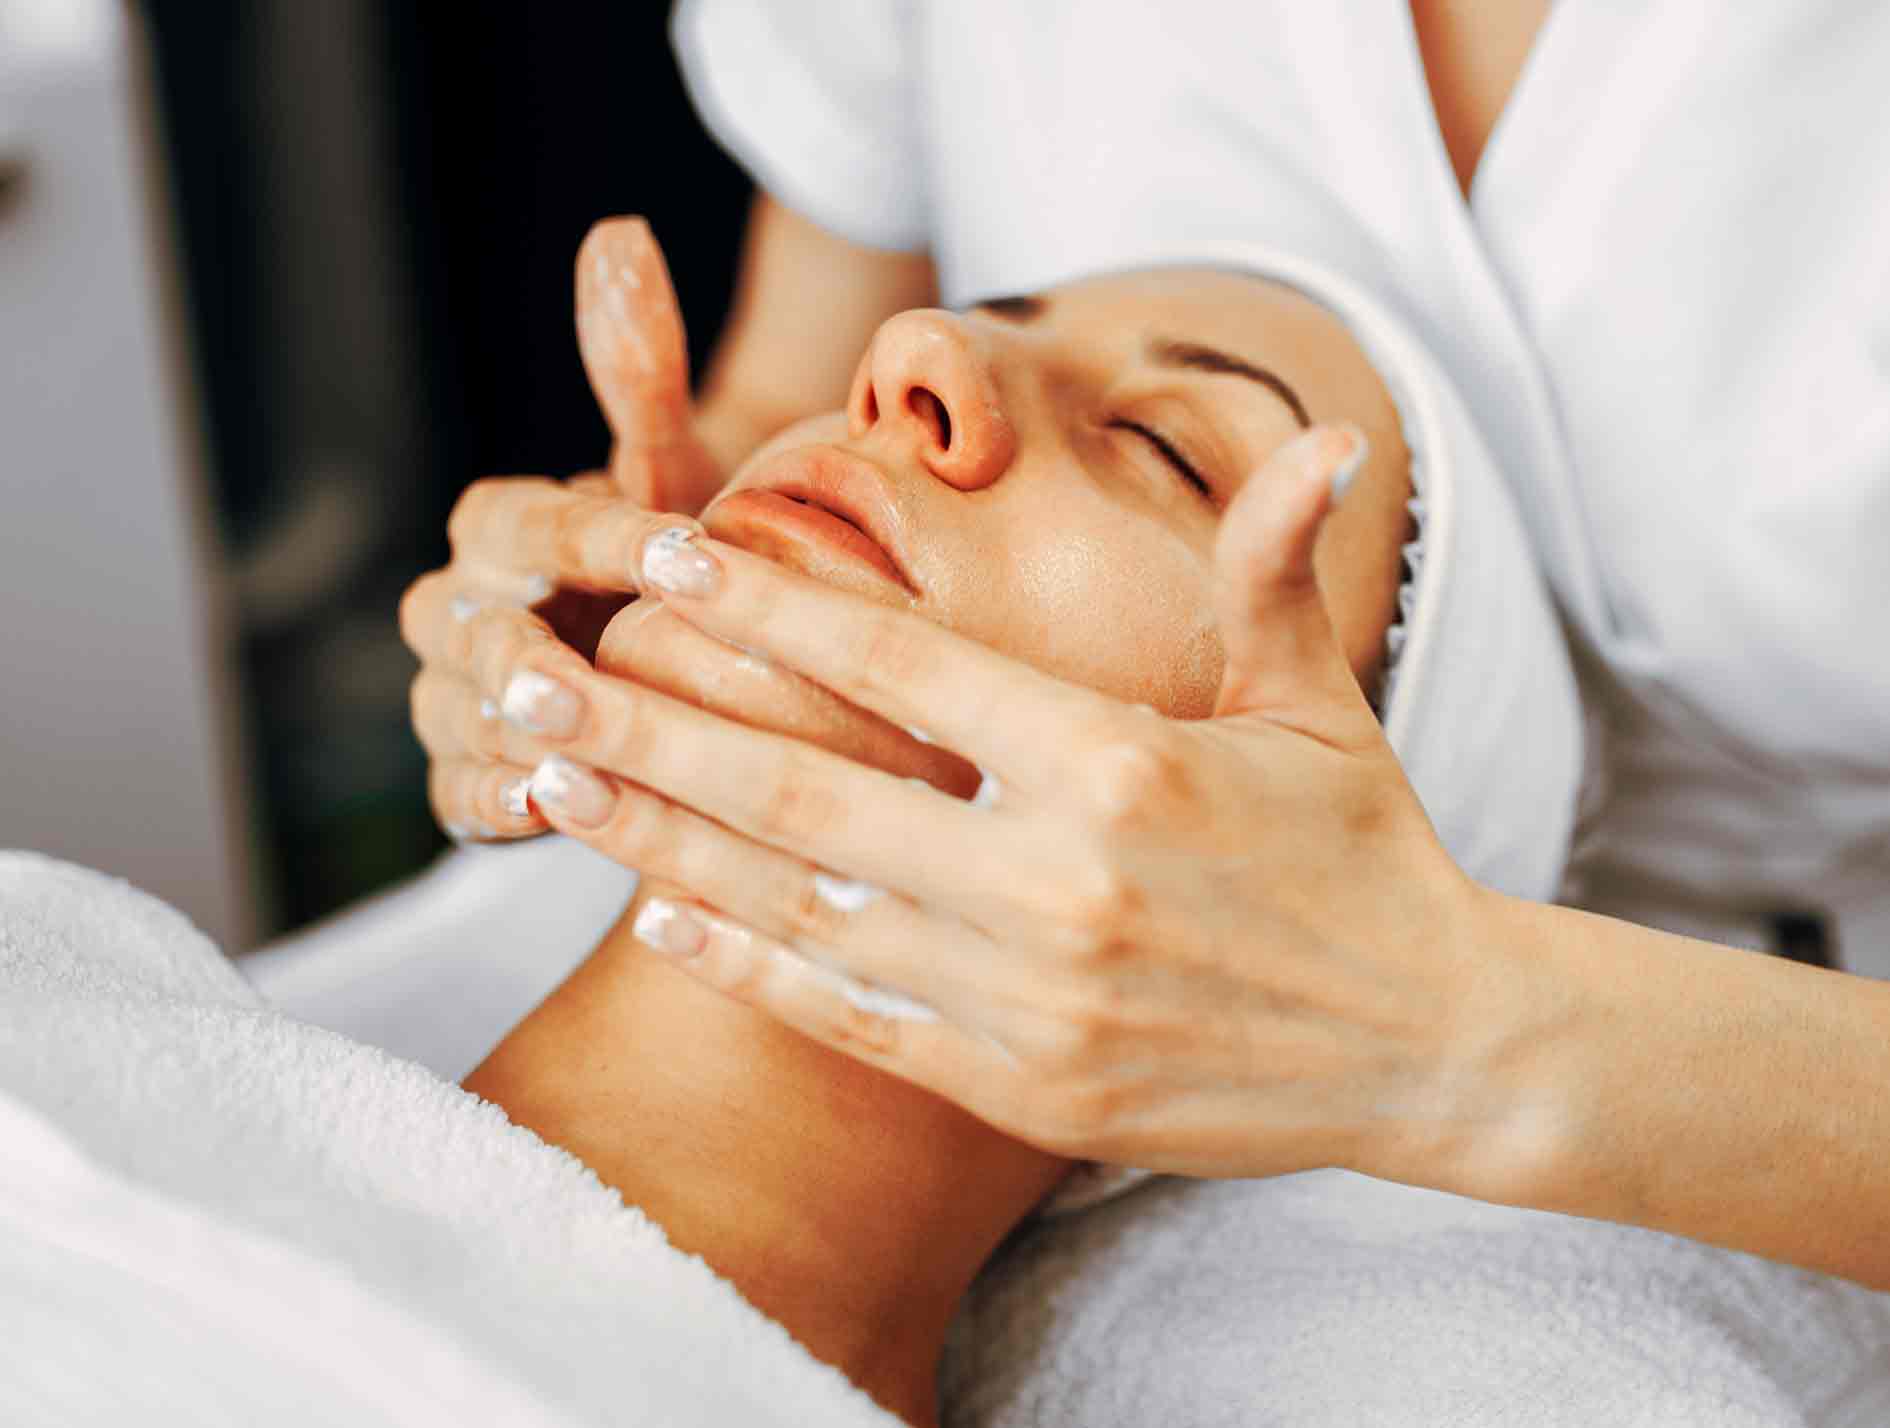 massage thérapeutique bien-être bruxelles relaxant énergisant massages huile chaude hammam detox ayurveda